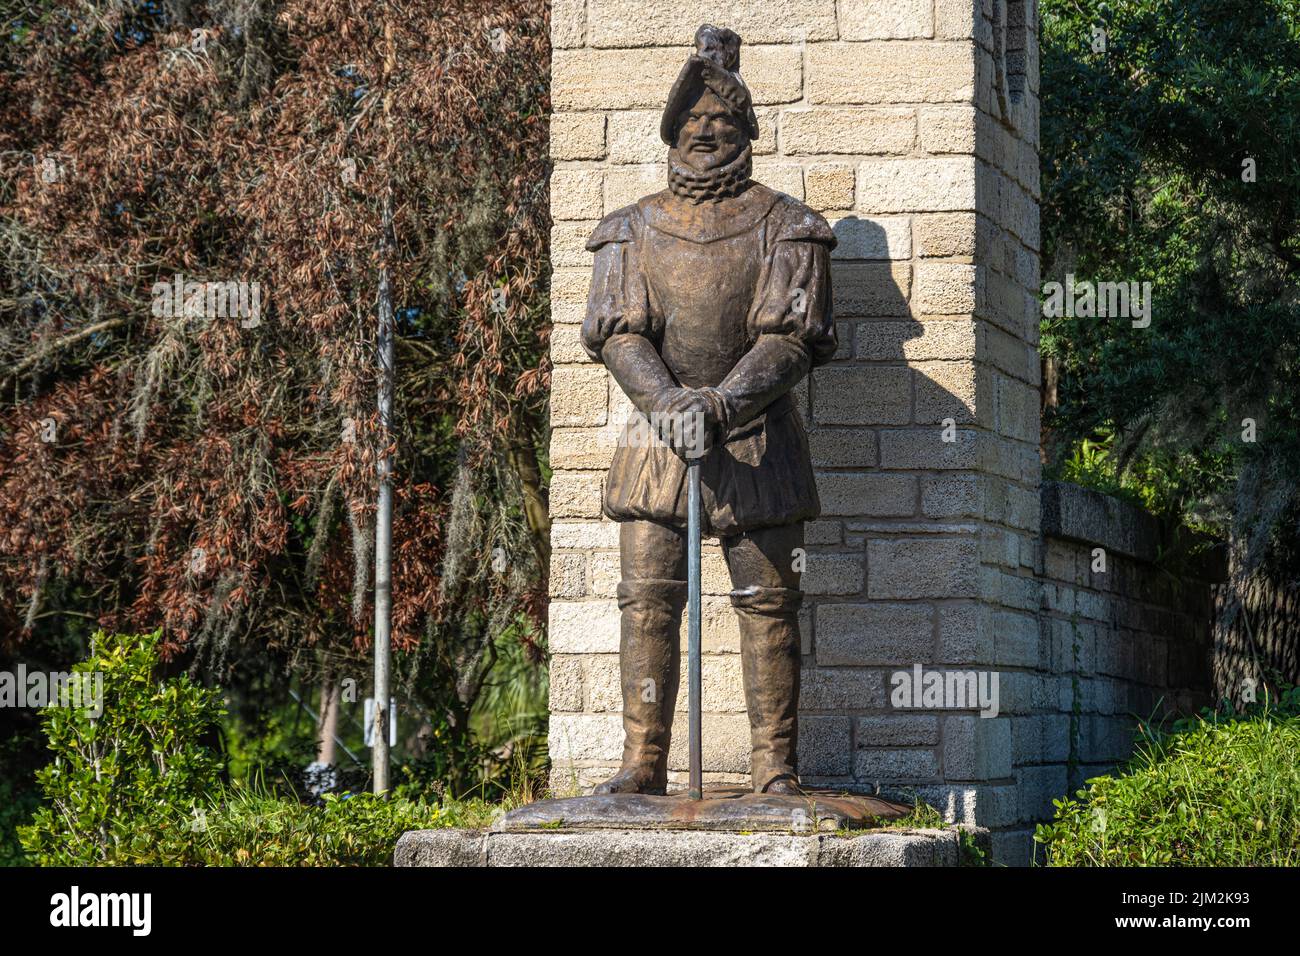 Estatua de Don Pedro Menéndez de Aviles, el almirante y explorador español que fundó San Agustín, en la puerta de entrada a la ciudad de San Agustín. Foto de stock